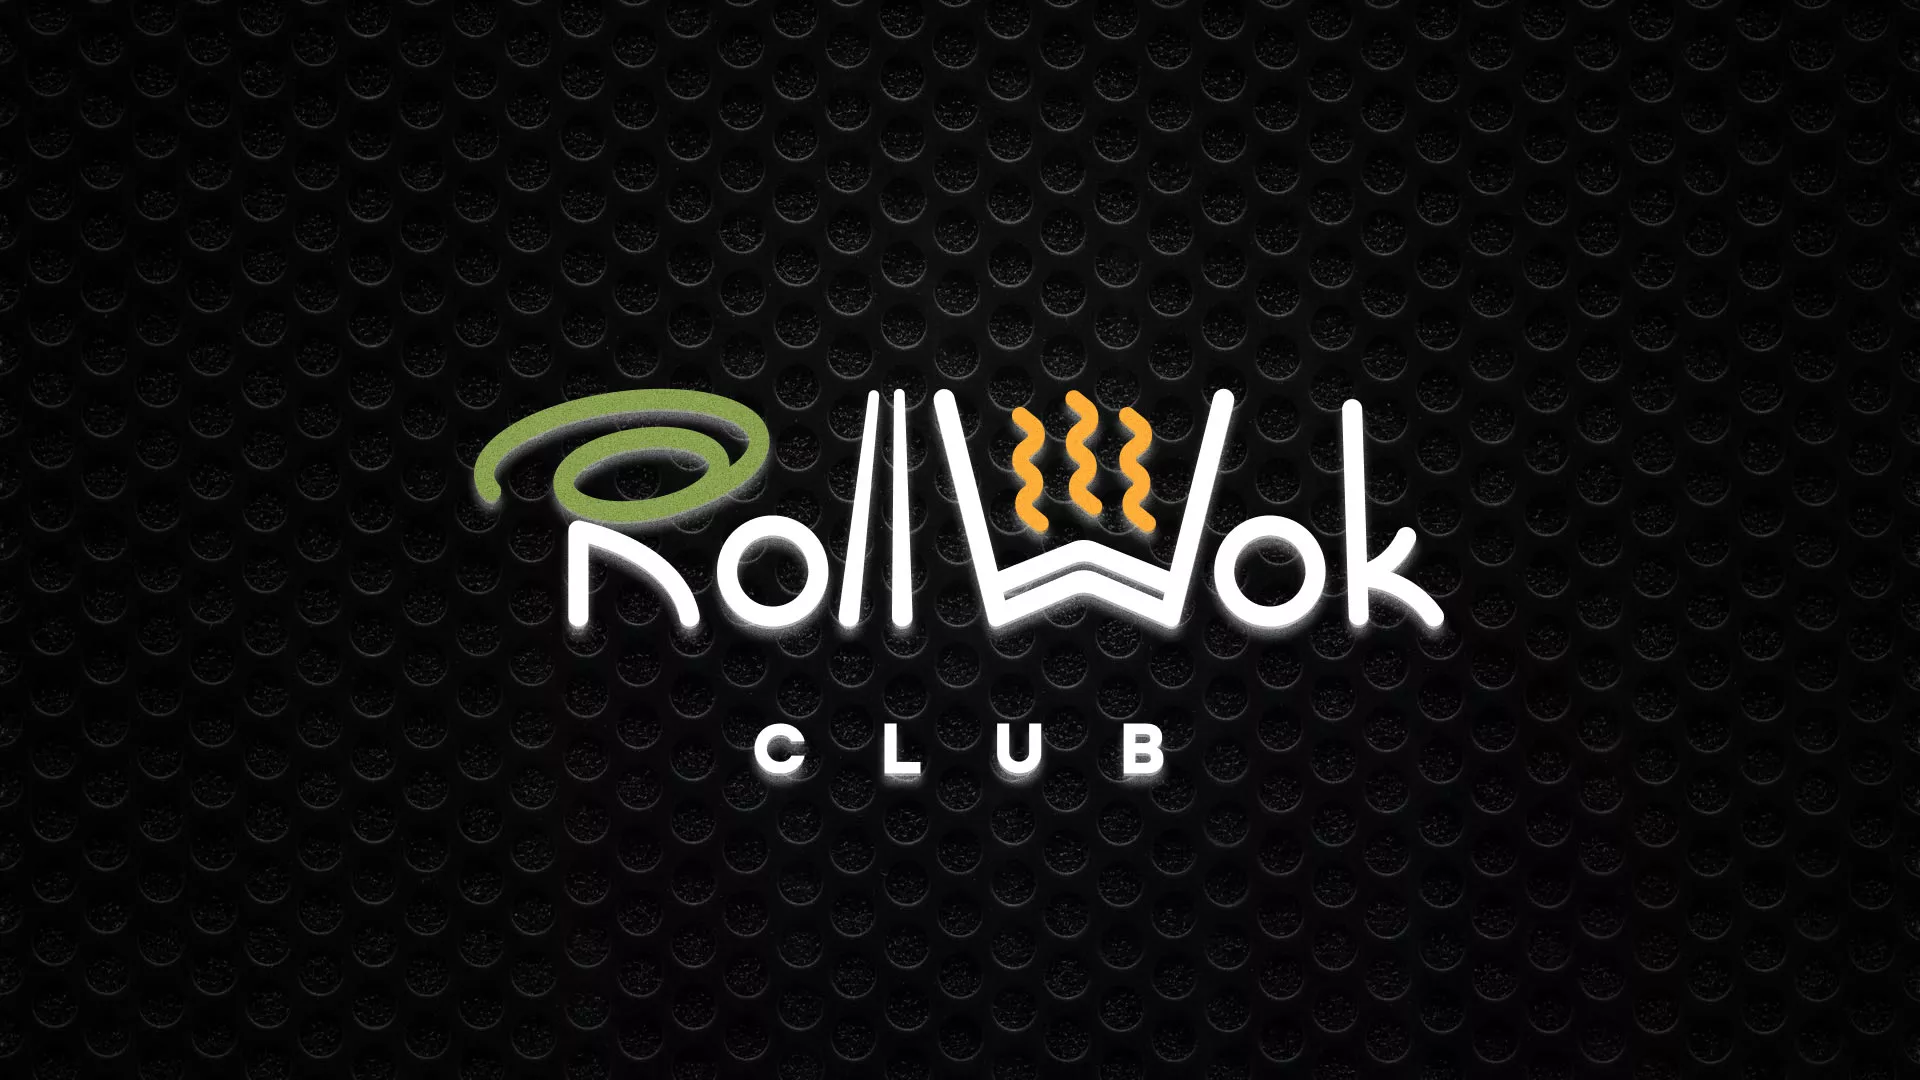 Брендирование торговых точек суши-бара «Roll Wok Club» в Судогде